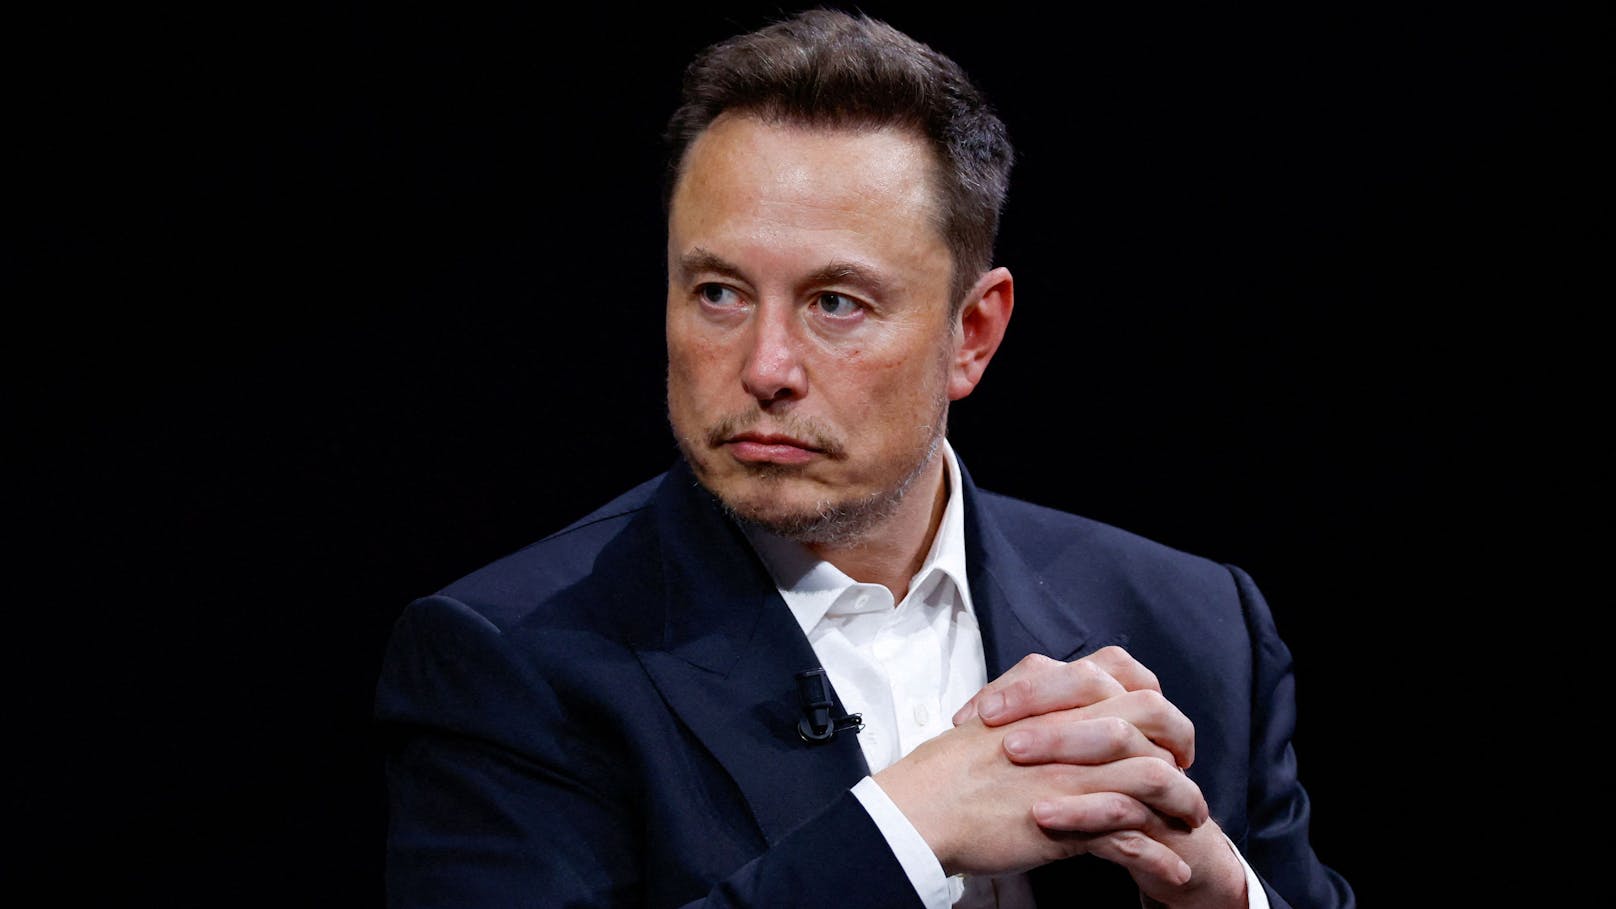 "Go f*** yourself" – Elon Musk beschimpft Werbekunden